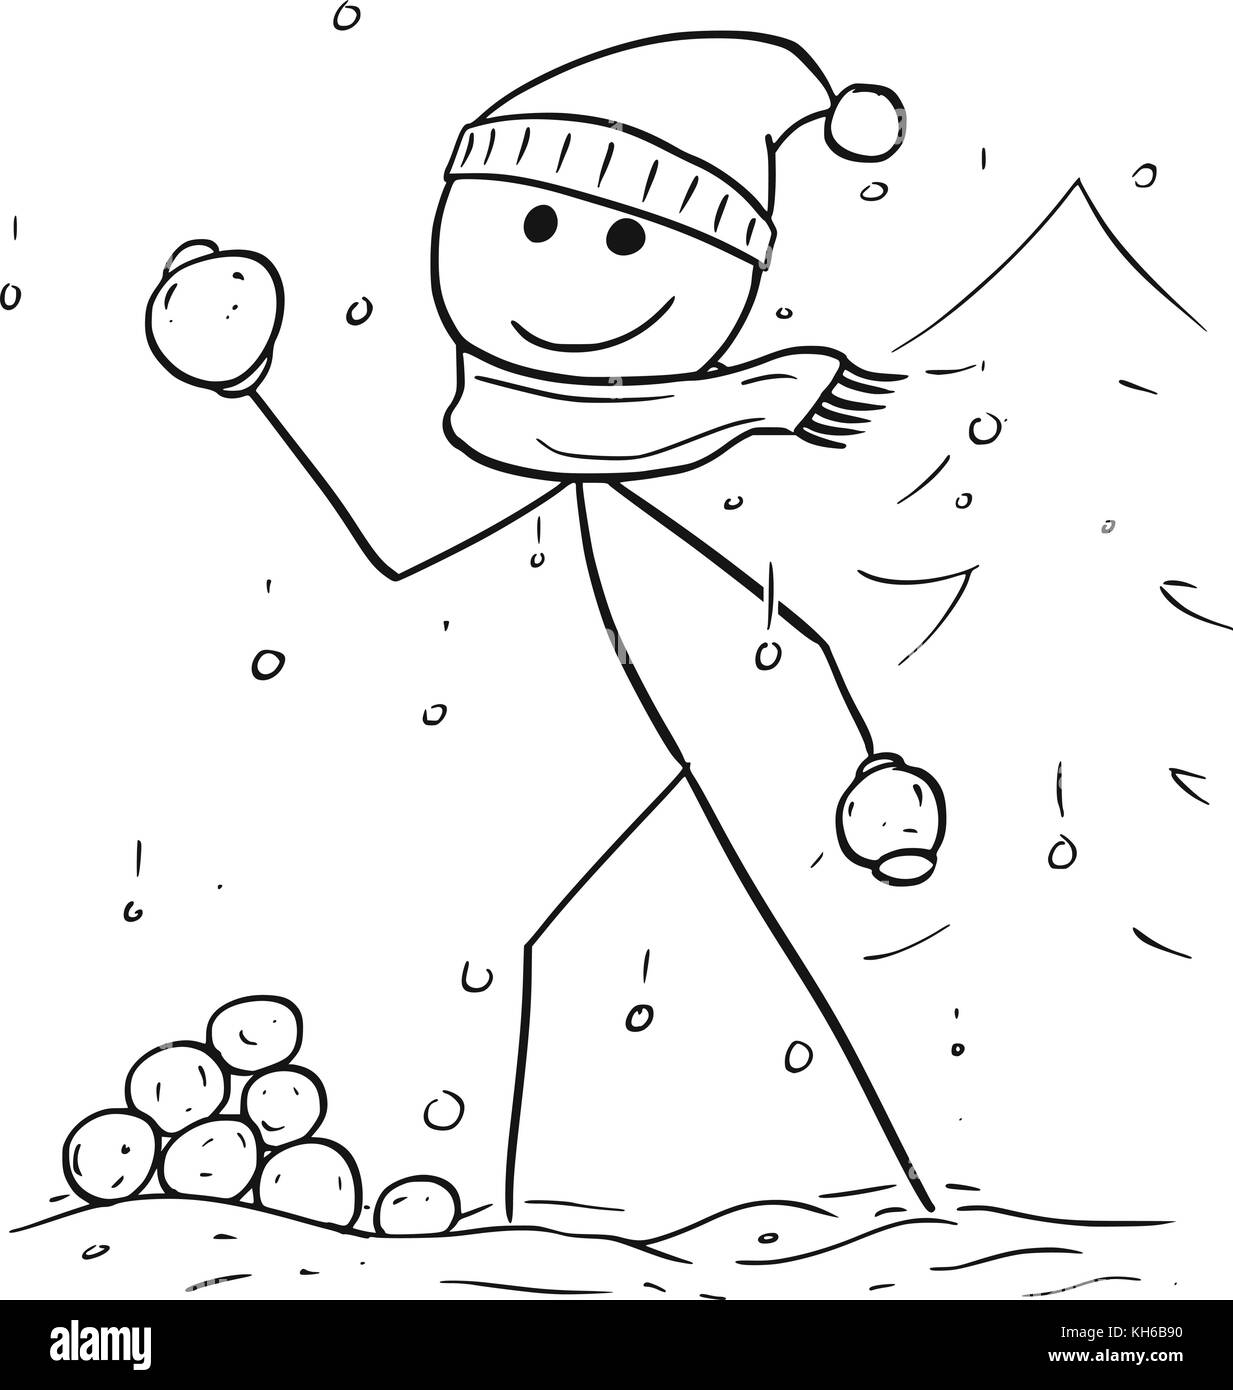 Cartoon stick uomo disegno illustrativo dell'uomo holding e lanciando palle di neve durante nevicate invernali. Illustrazione Vettoriale